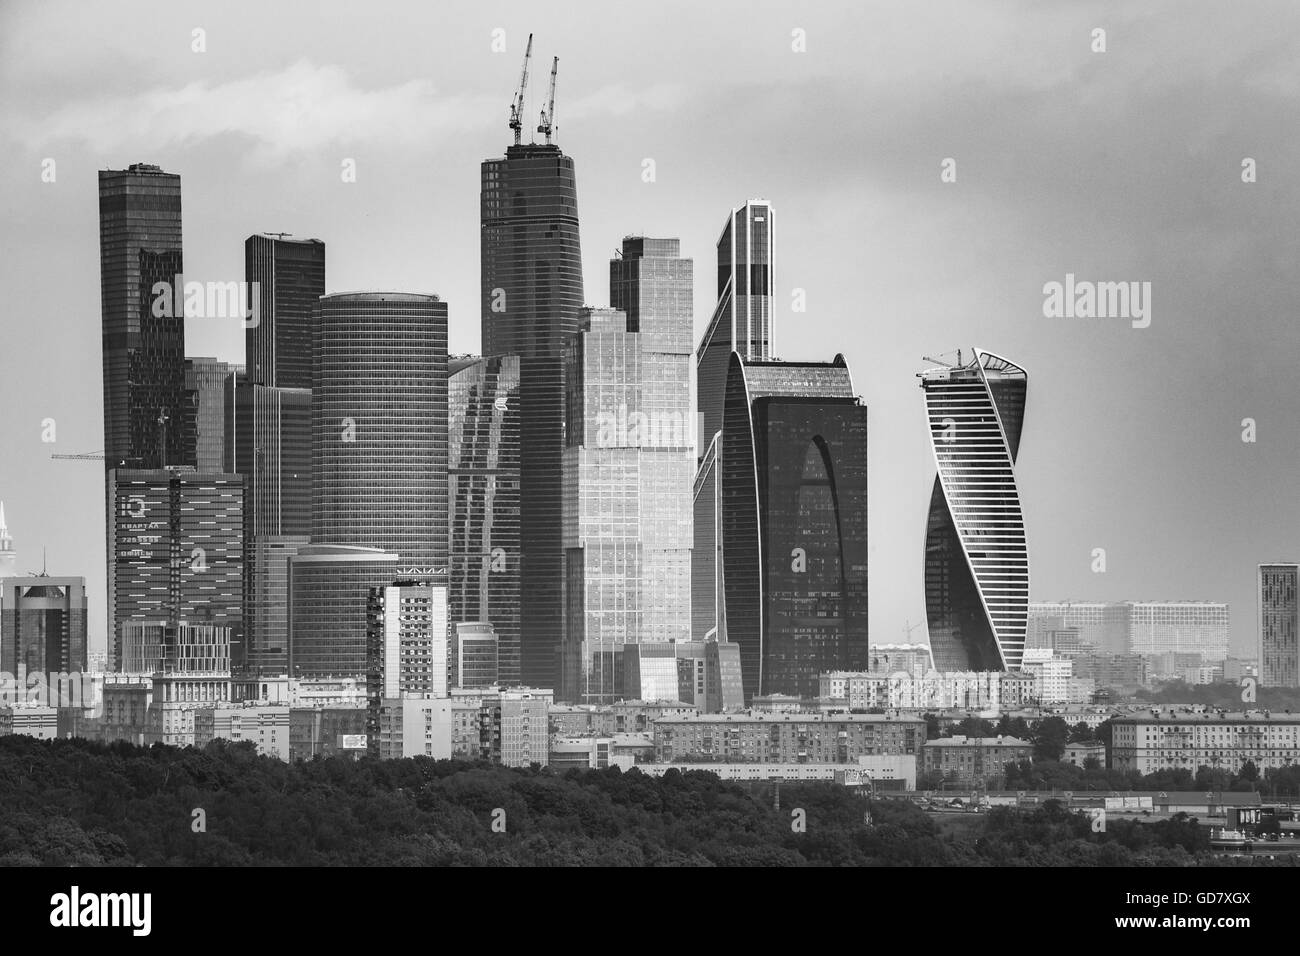 Moskau, Russland - 24. Mai 2015: Gebäude der Stadt Moskau Komplex von Wolkenkratzern aus Sperlingsbergen, Russland Stockfoto